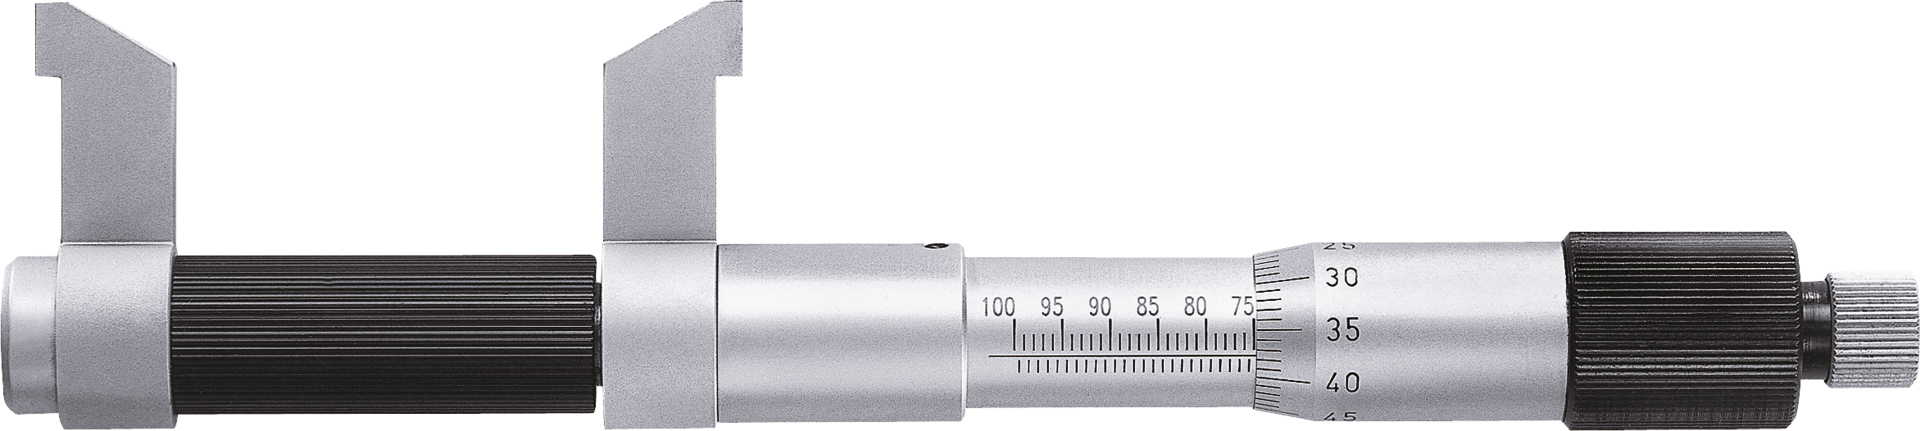 Innenmessschraube Präzision Abl. 0,01mm DIN863 mit Messschnäbeln MB75-100mm